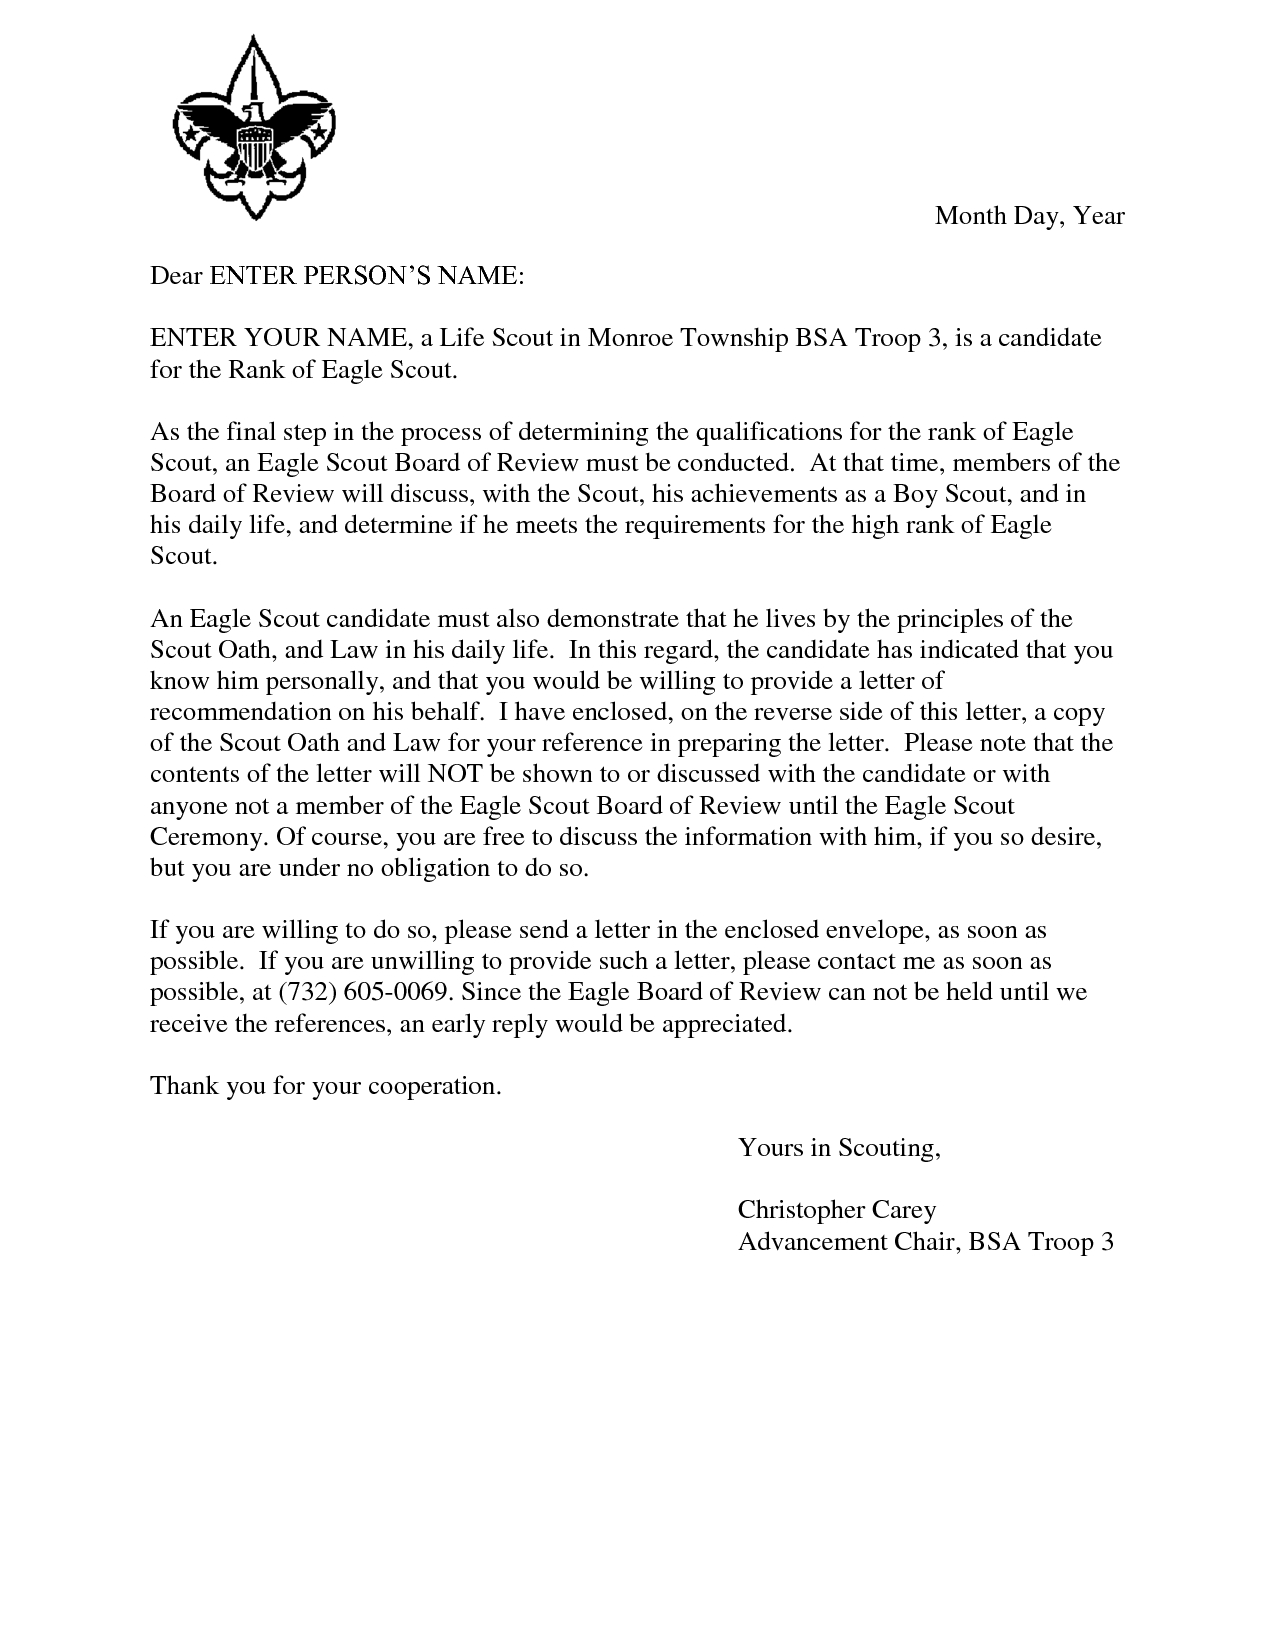 Eagle Scout Parent Letter Of Recommendation Form Debandje inside measurements 1275 X 1650